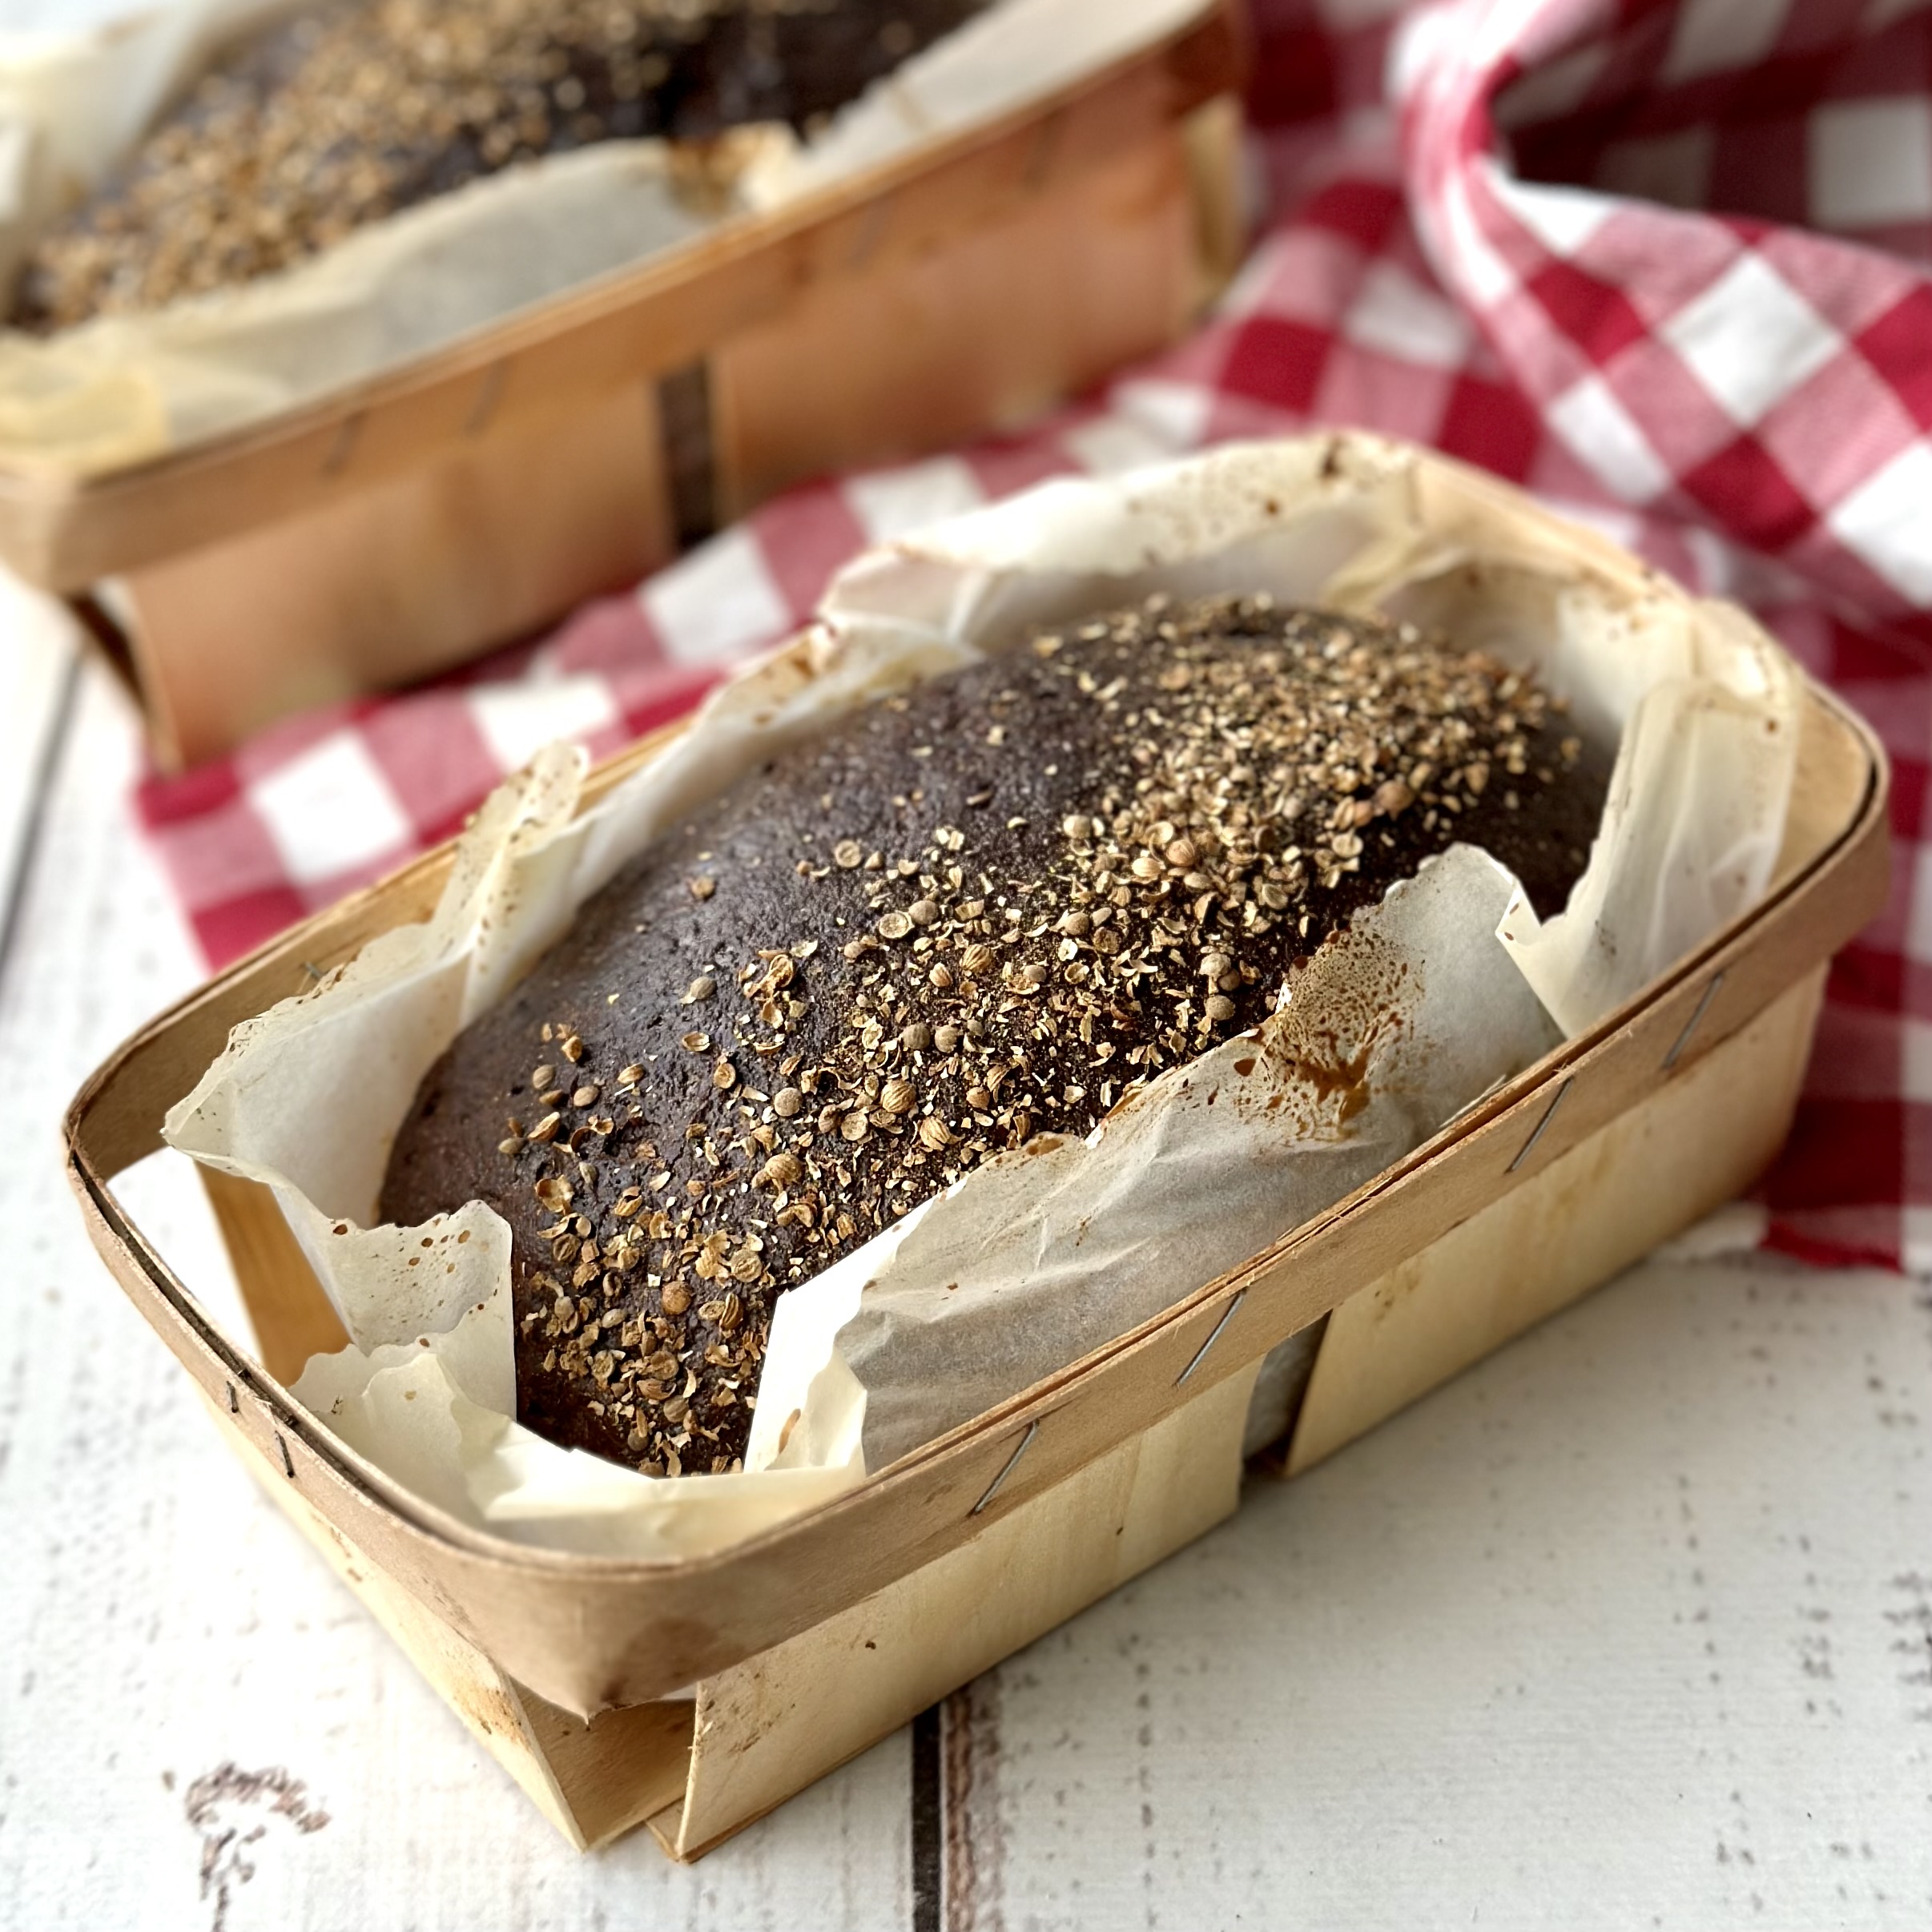 Хлеб с салом «Охотничий» – заварной хлеб из смеси муки ржаной хлебопекарной сеяной, пшеничной муки первого сорта, солода ржаного сухого с добавлением сала. изображение 3